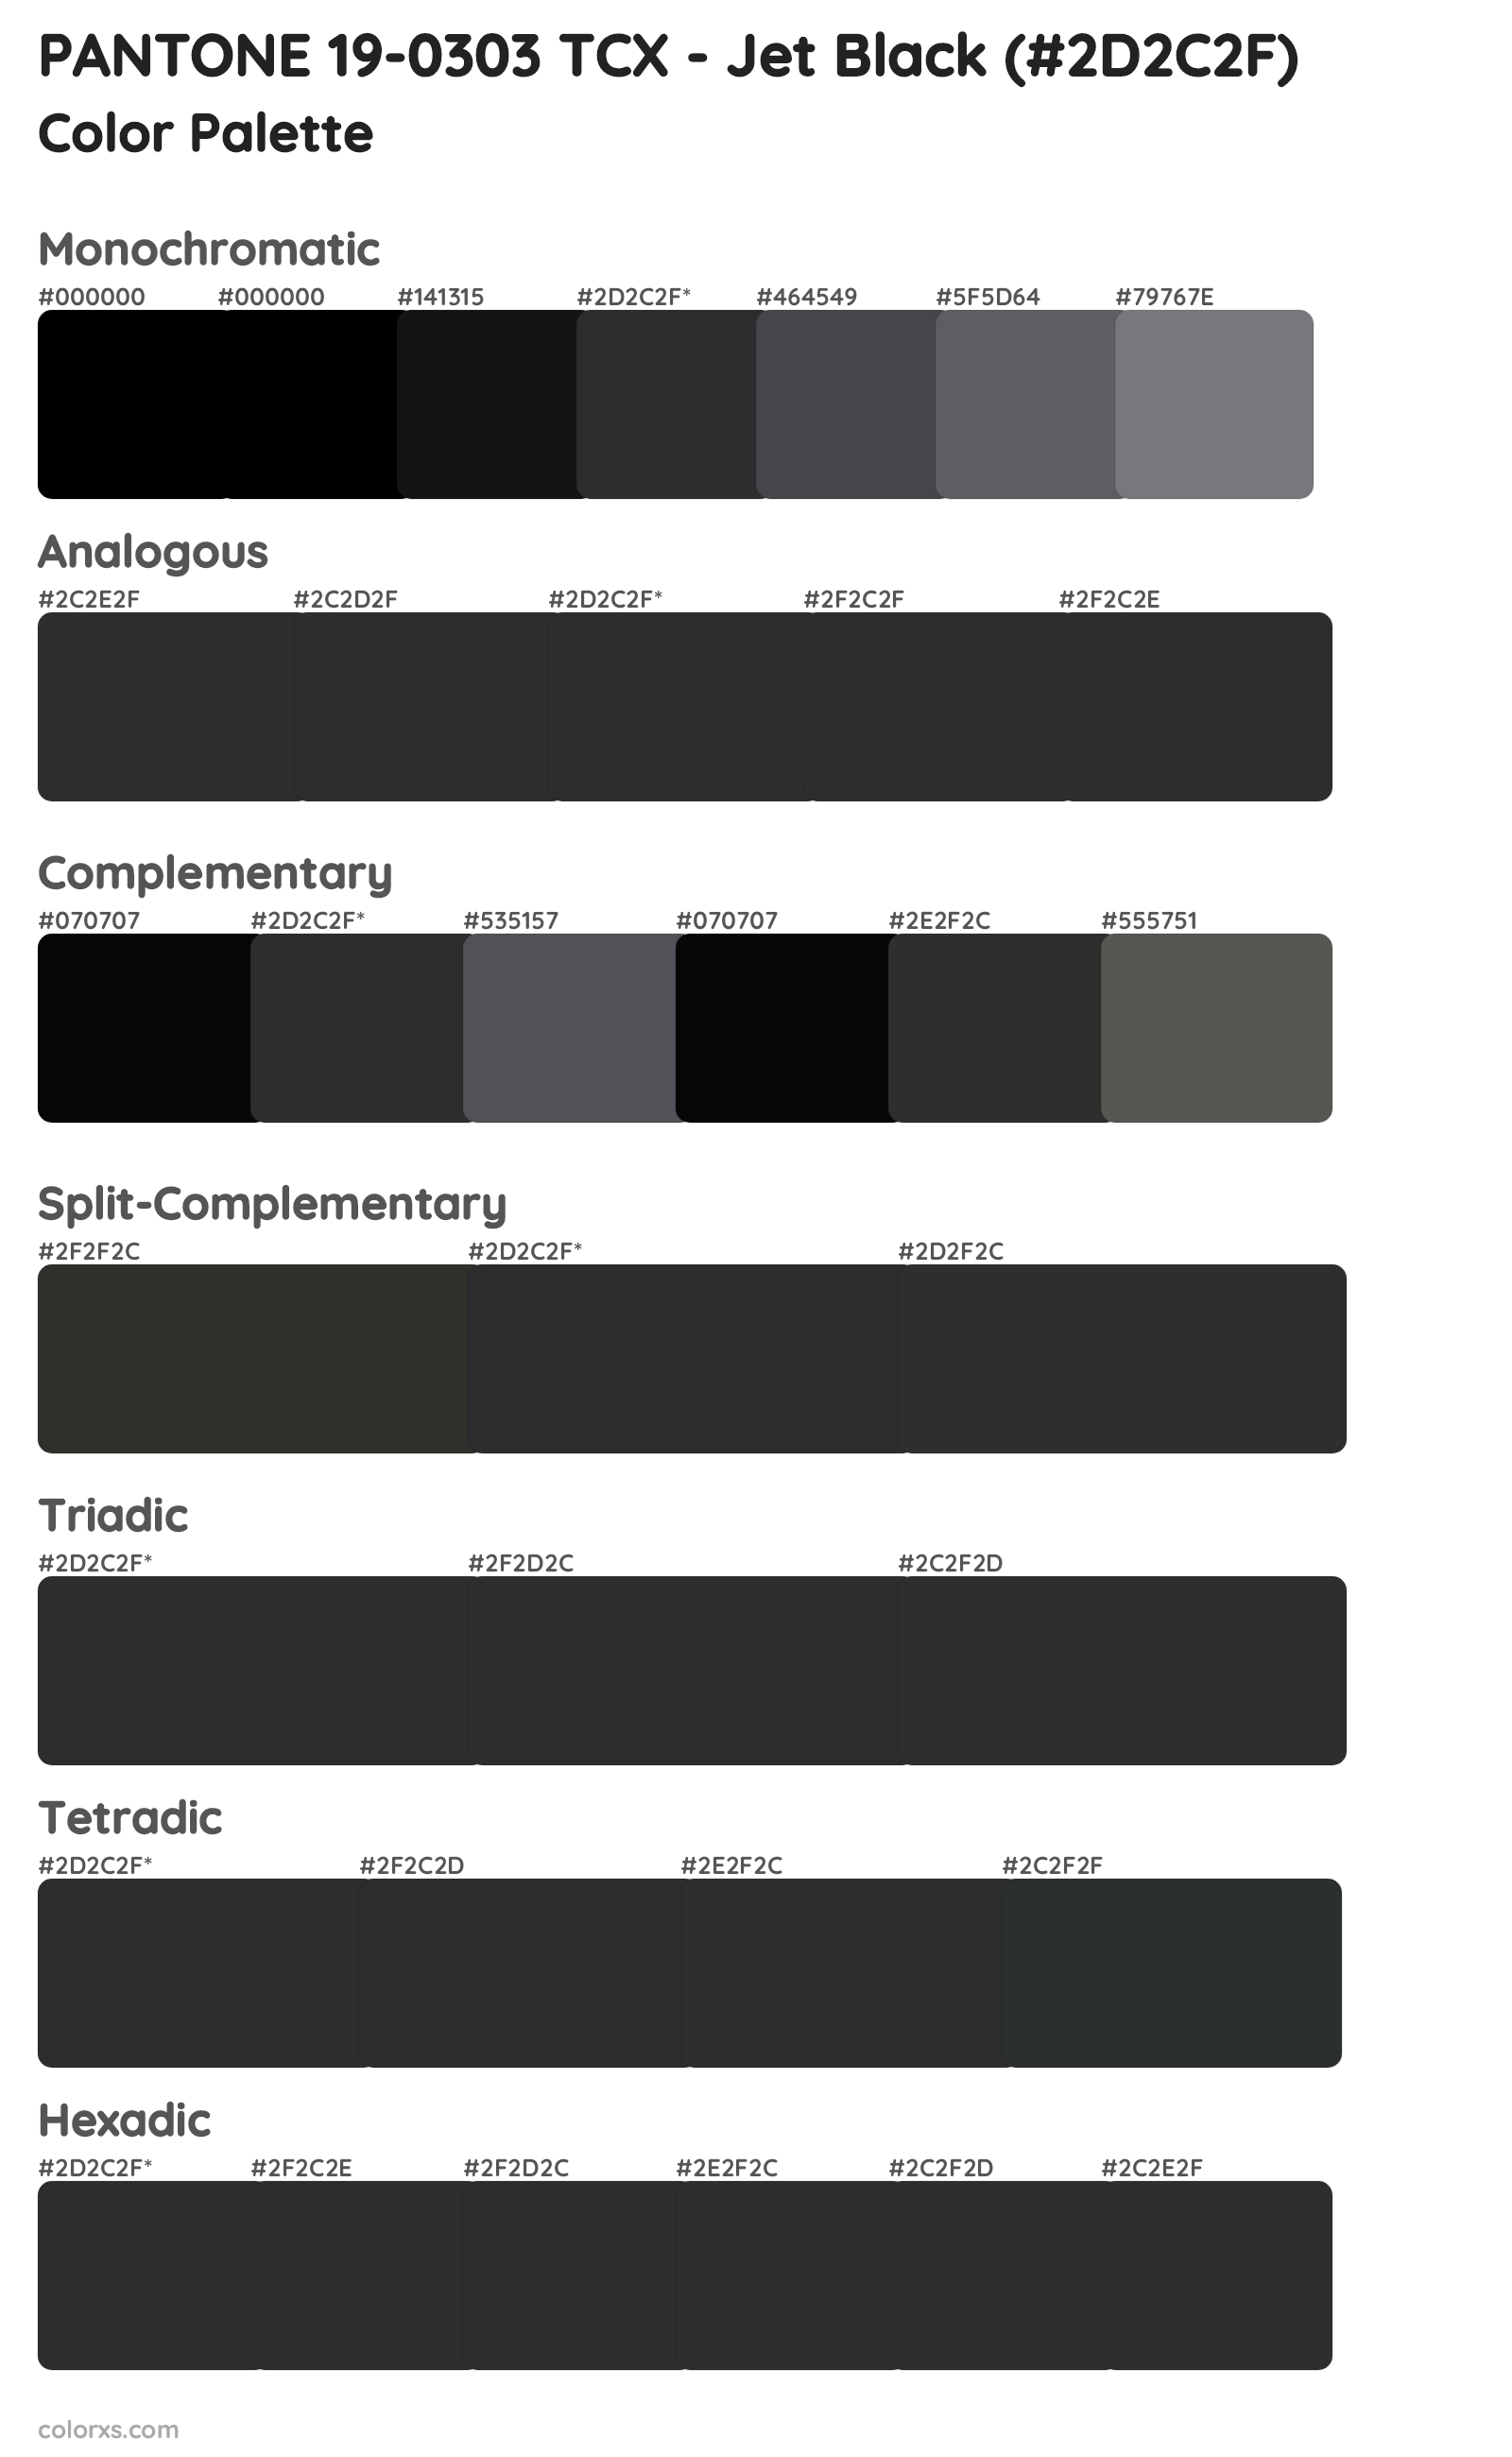 PANTONE 19-0303 TCX - Jet Black Color Scheme Palettes